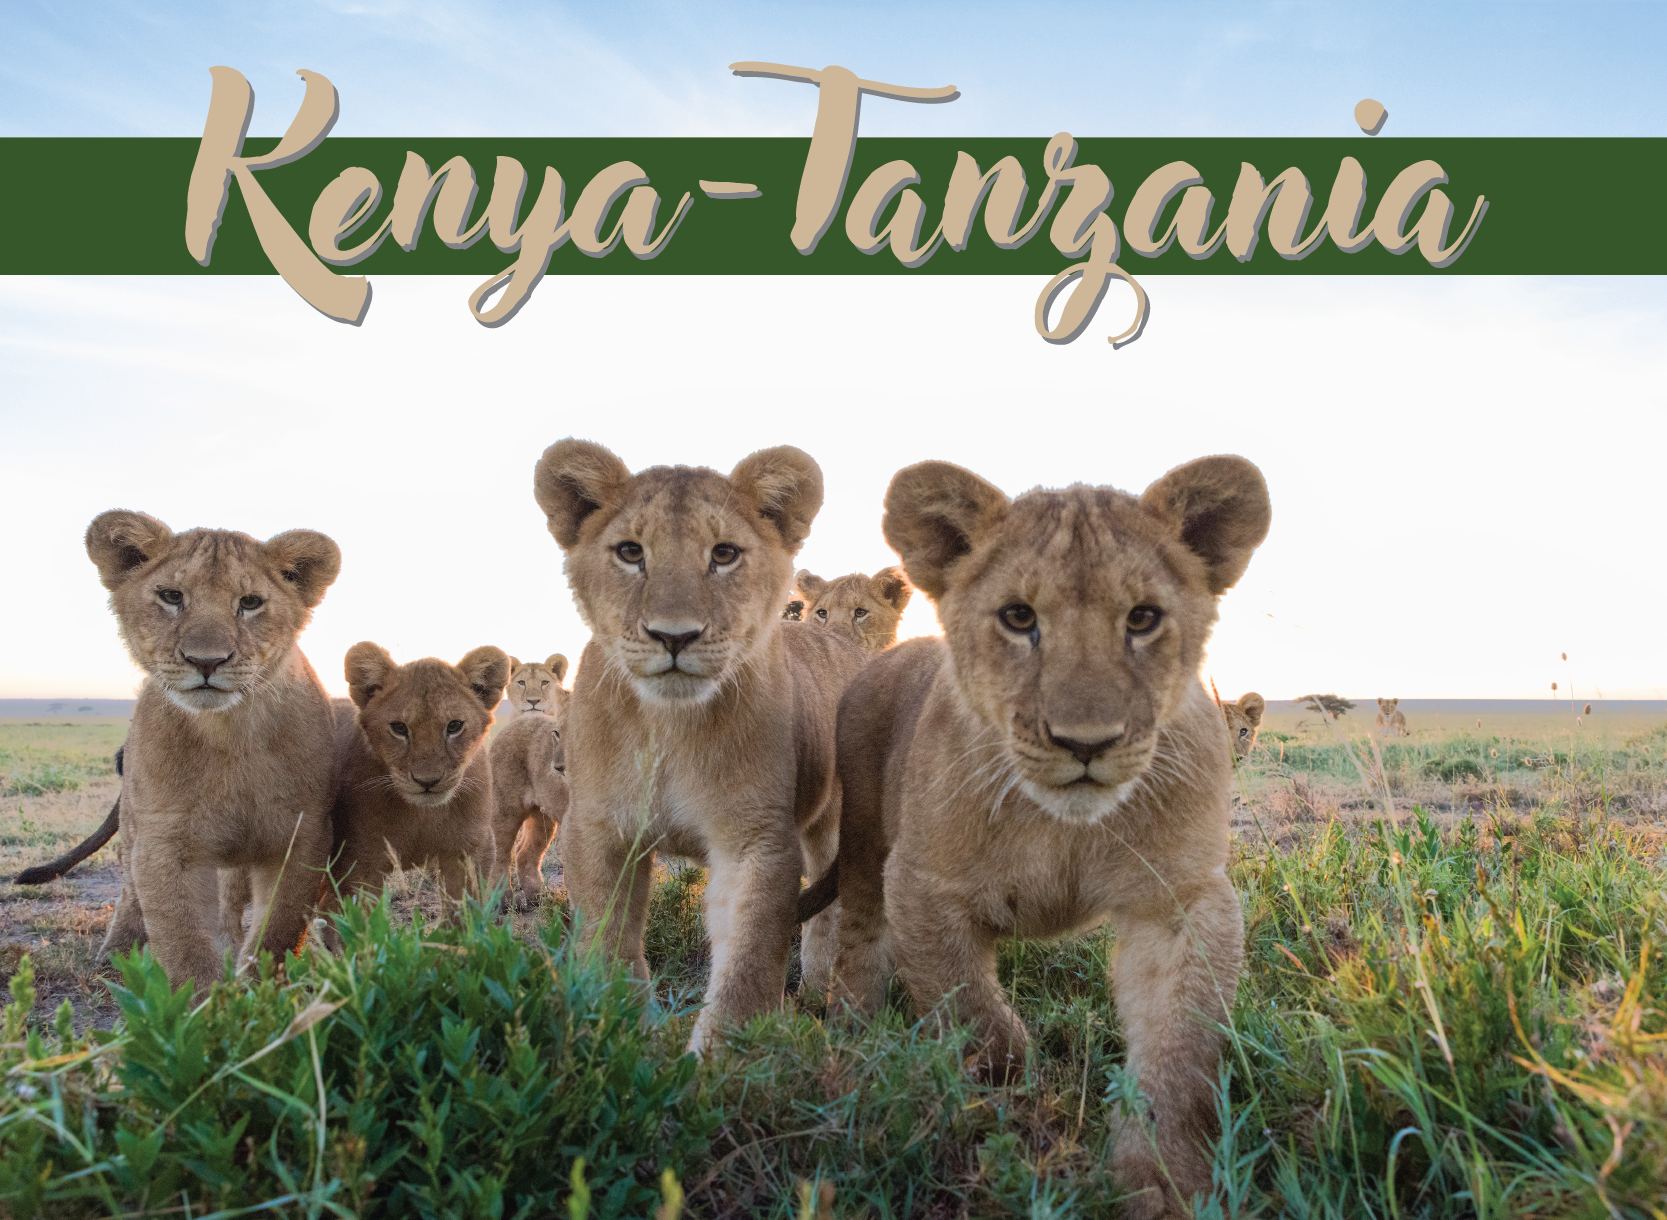 Kenya-Tanzania